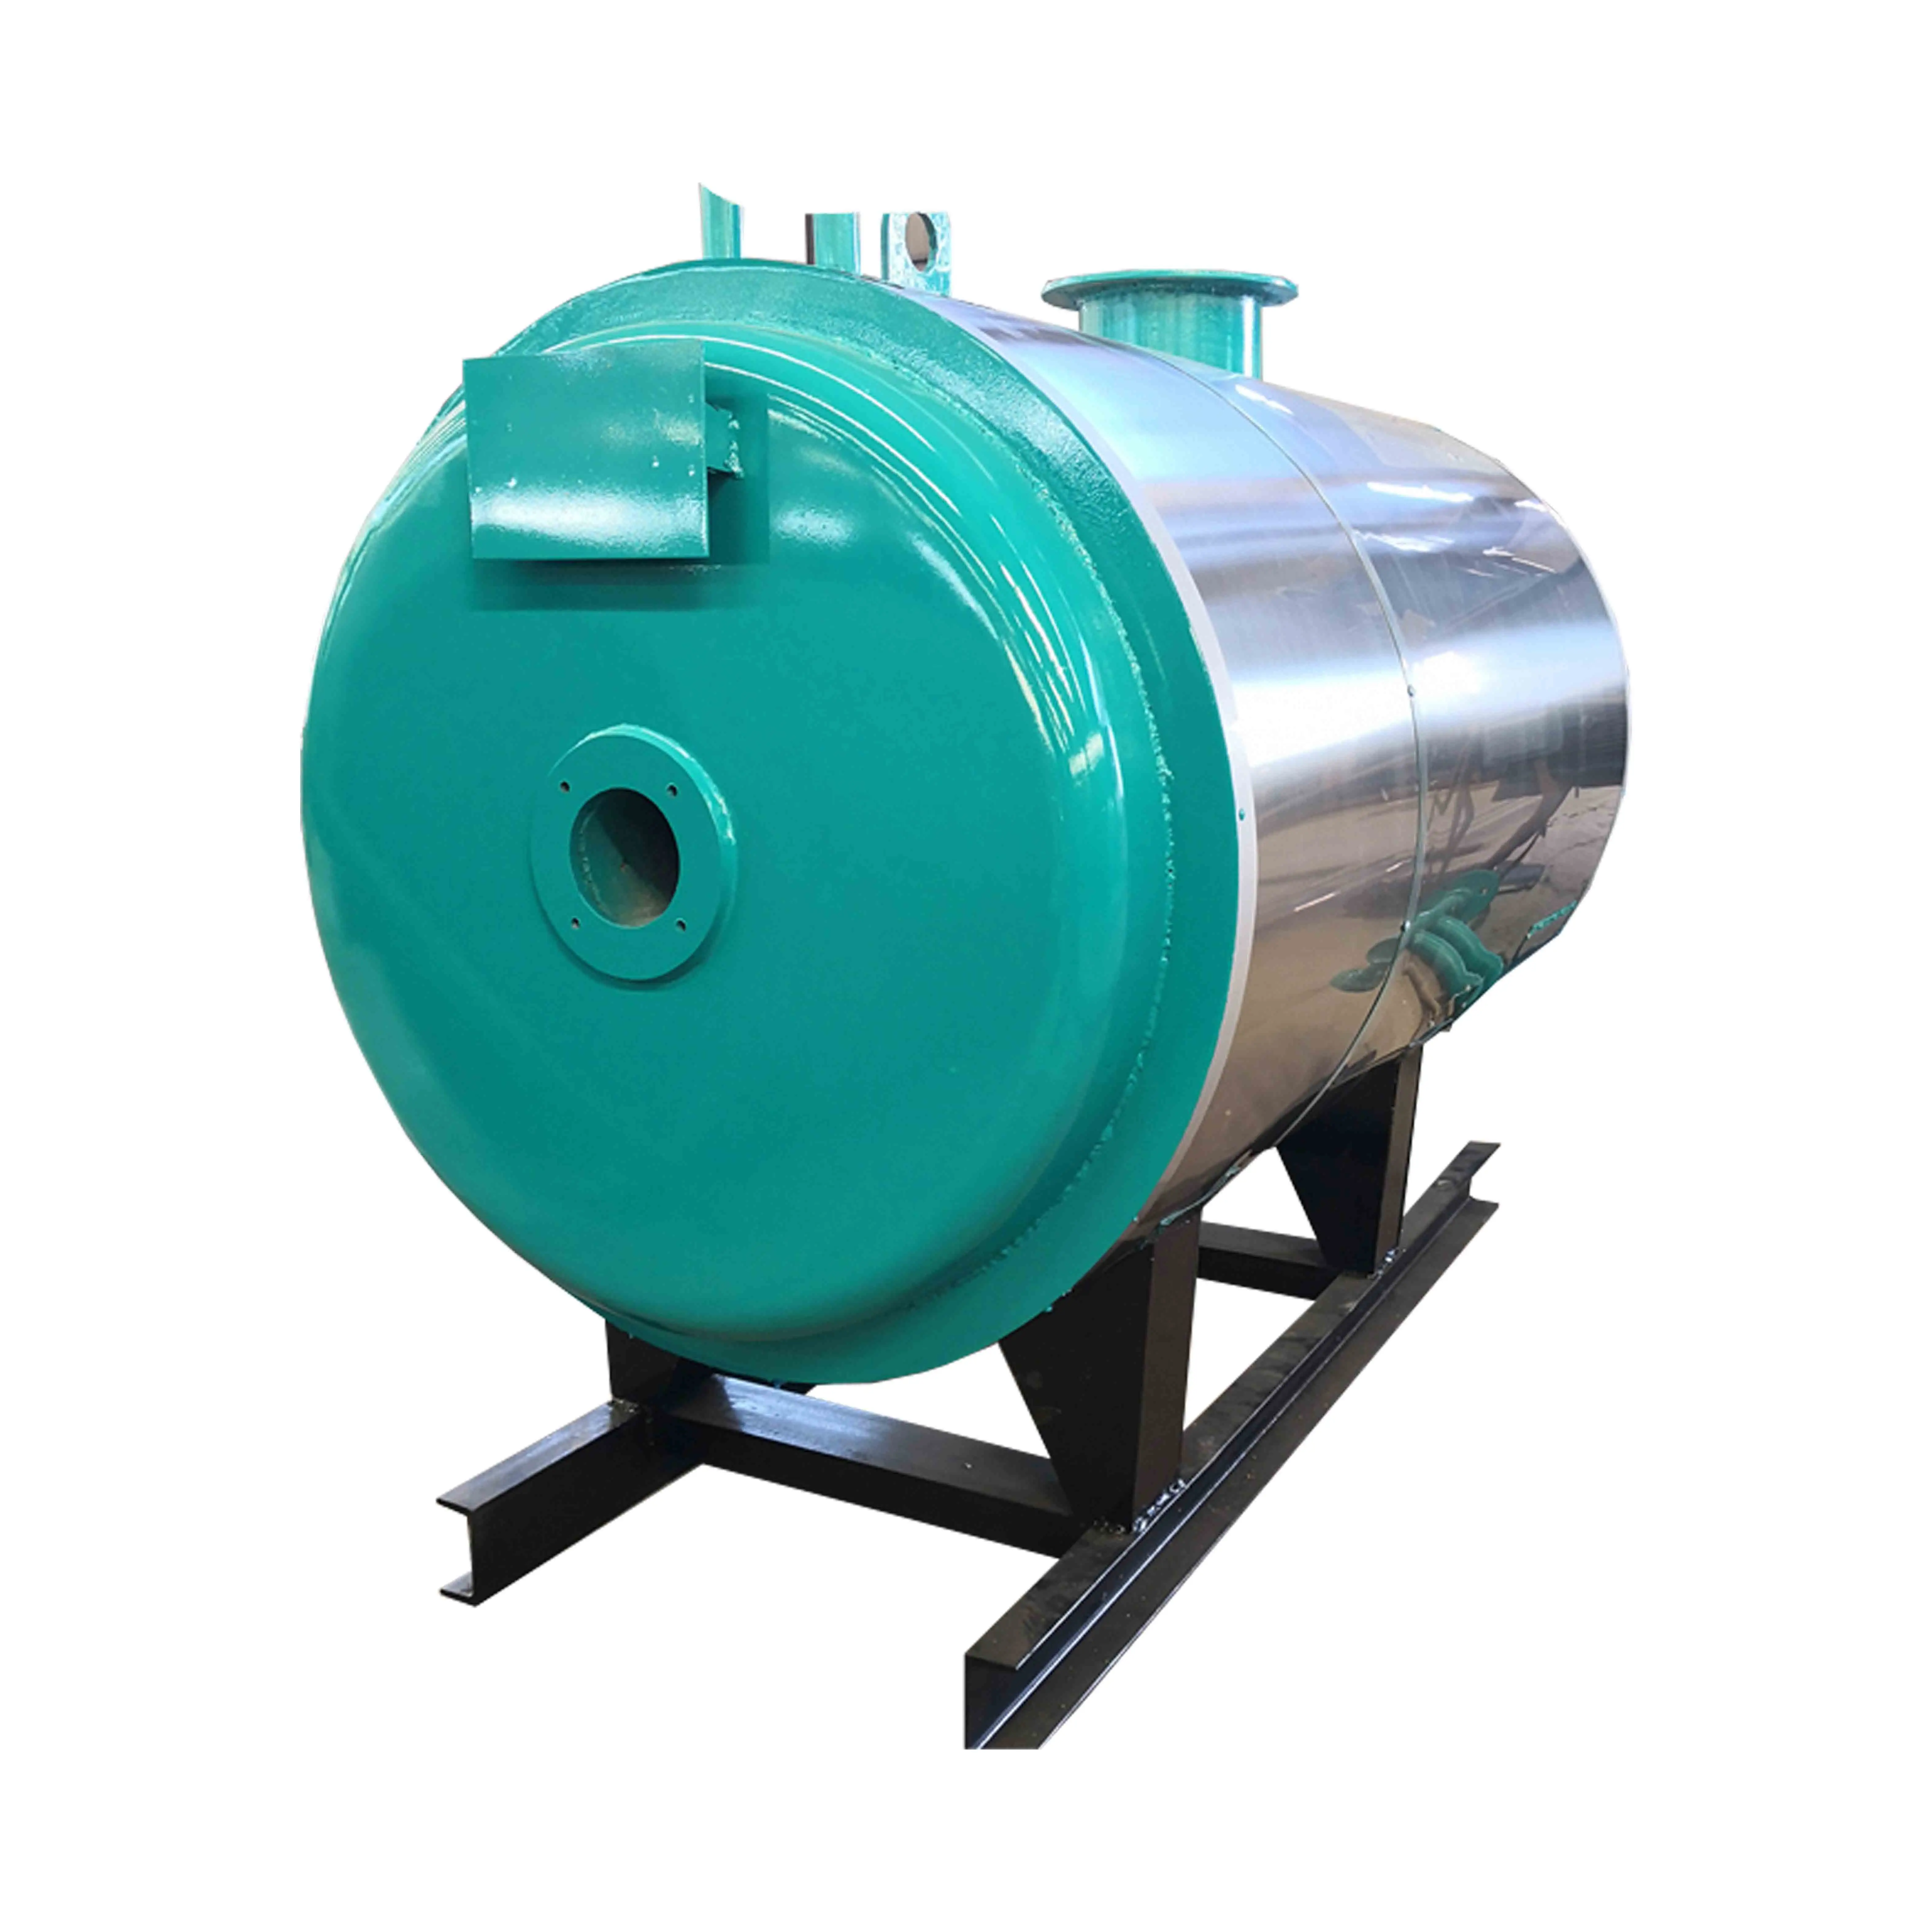 Produttori di fornire rumore piccolo stabile e affidabile conduzione del calore del Gas forno ad olio industriale orizzontale fornito tubo di acqua